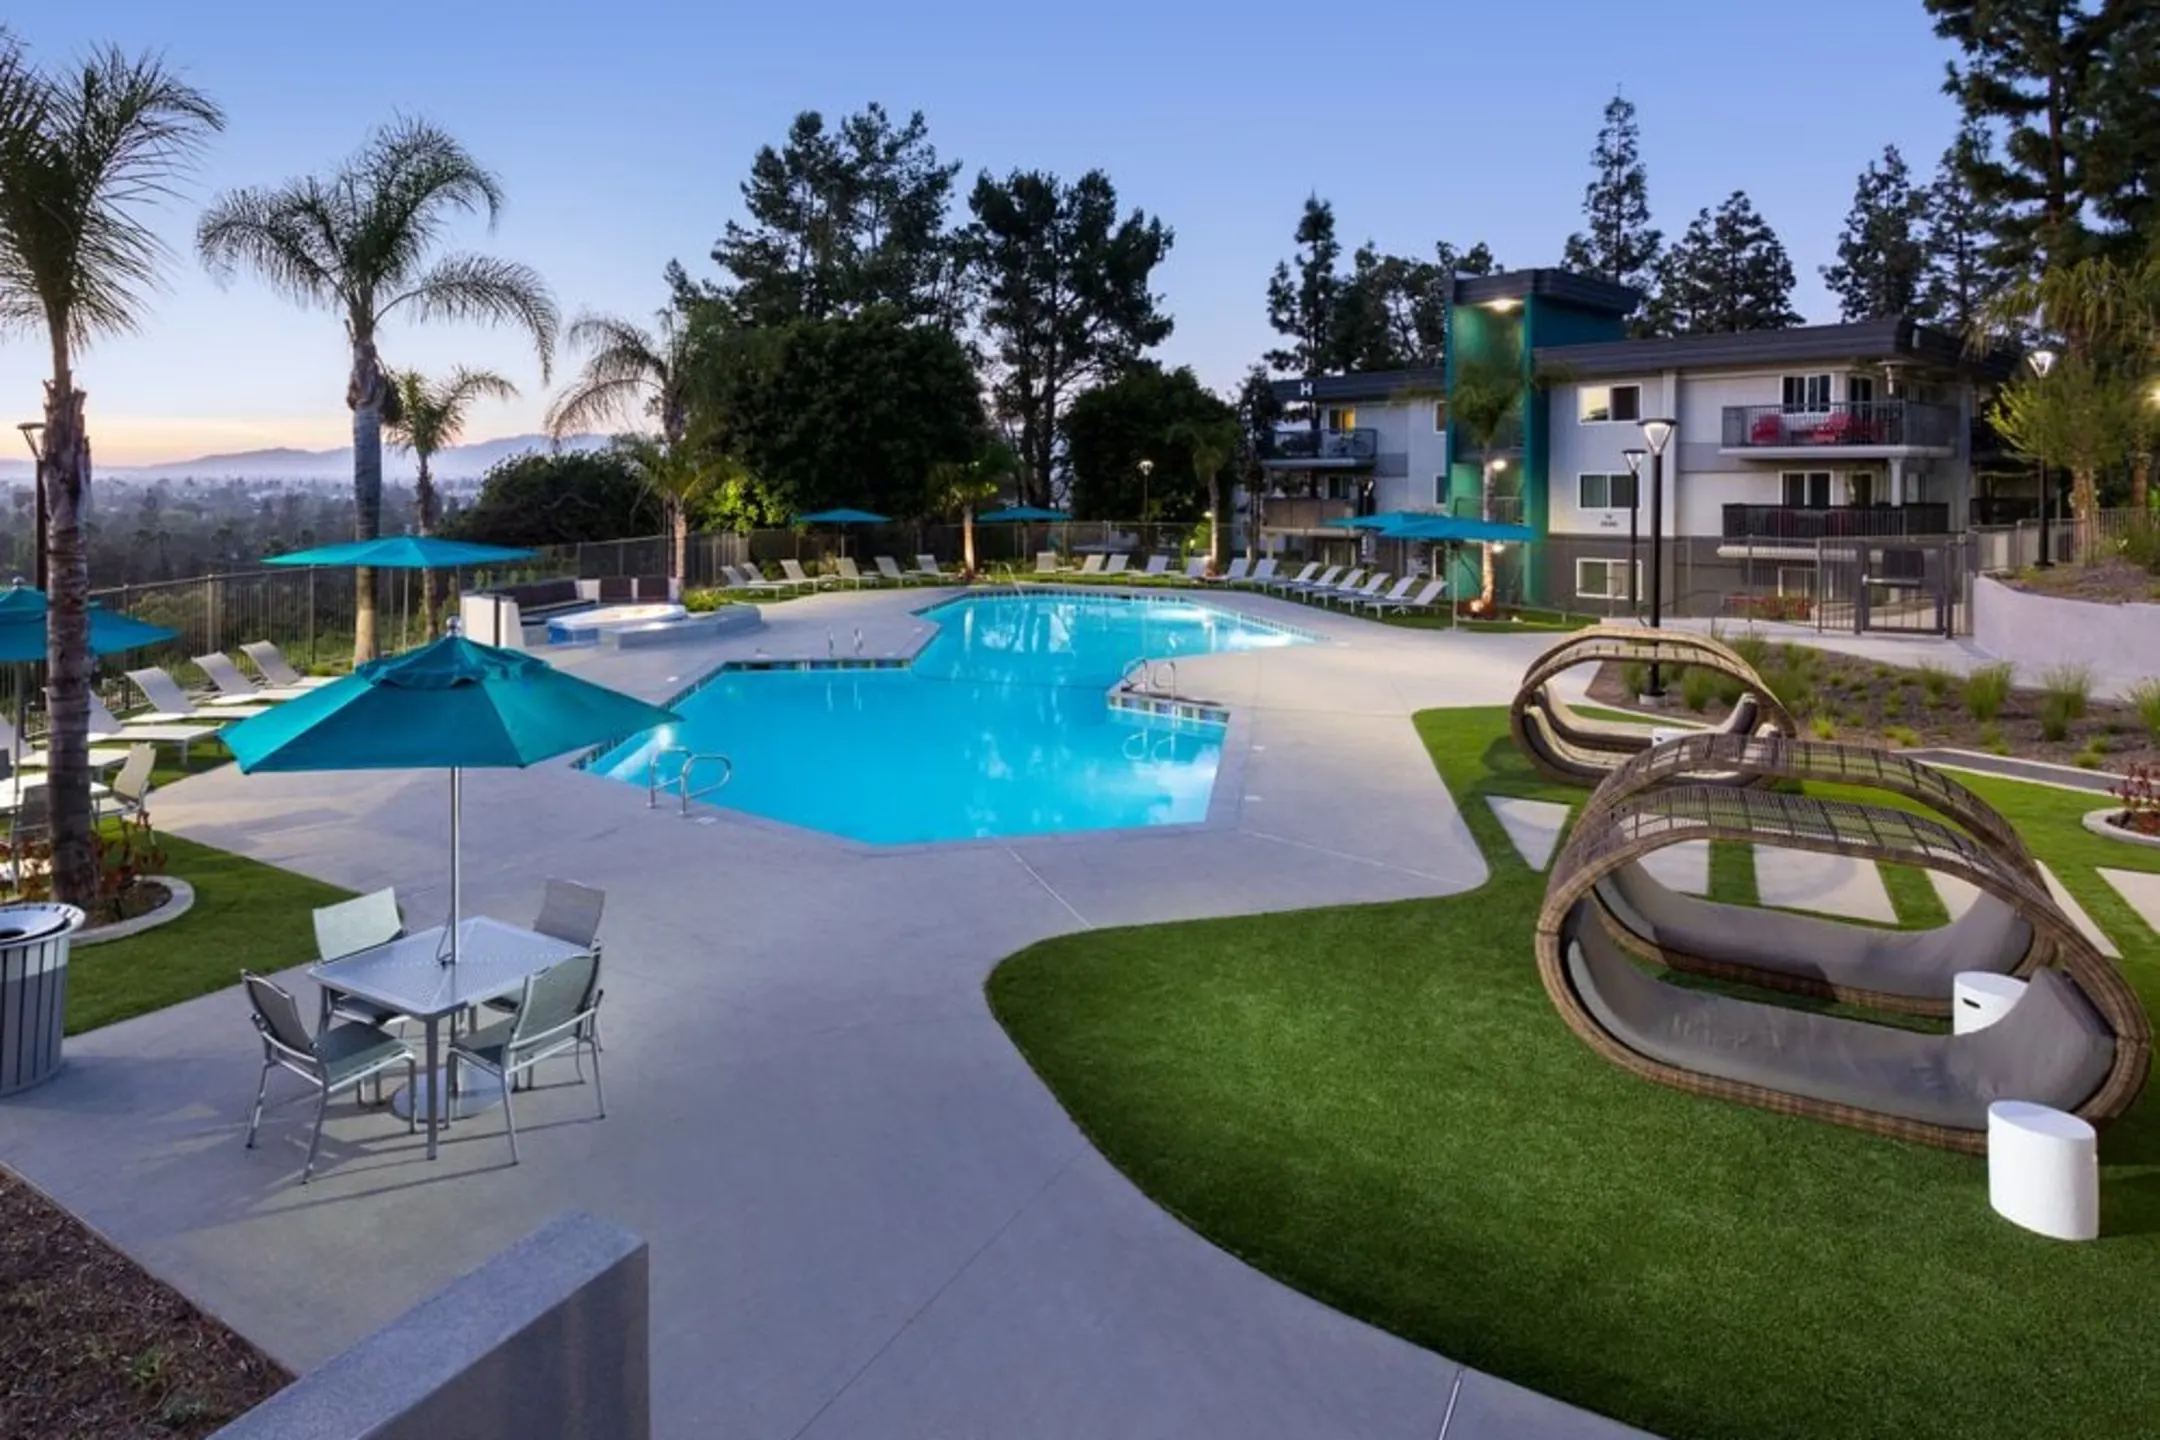 Pool - AVA Toluca Hills - Los Angeles, CA